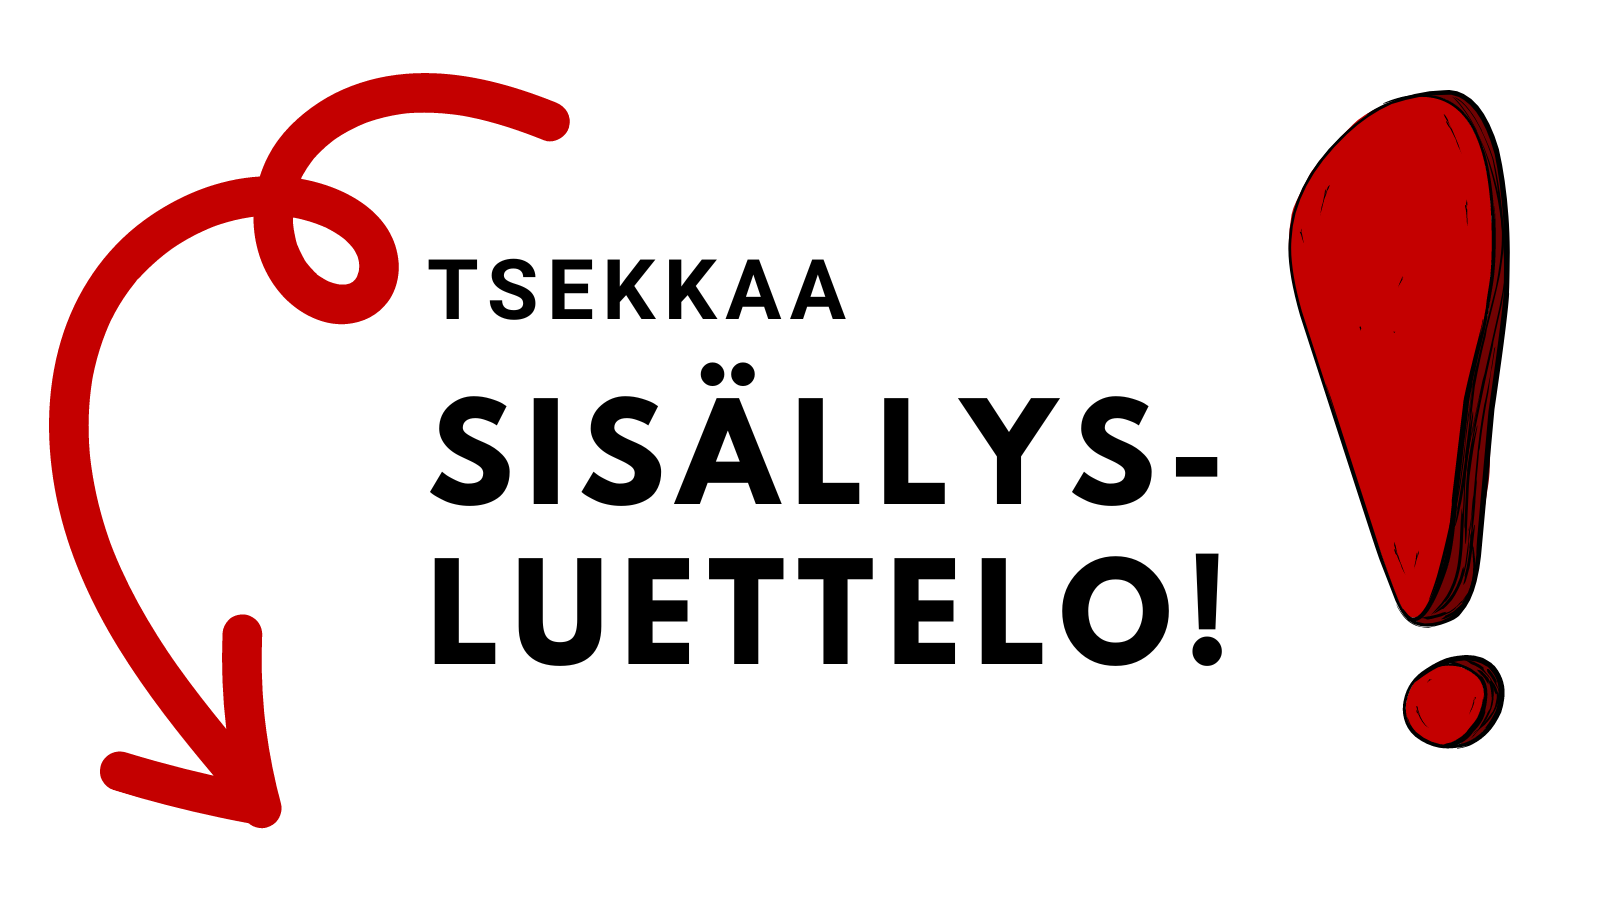 Tsekkaa.png (1600×900)